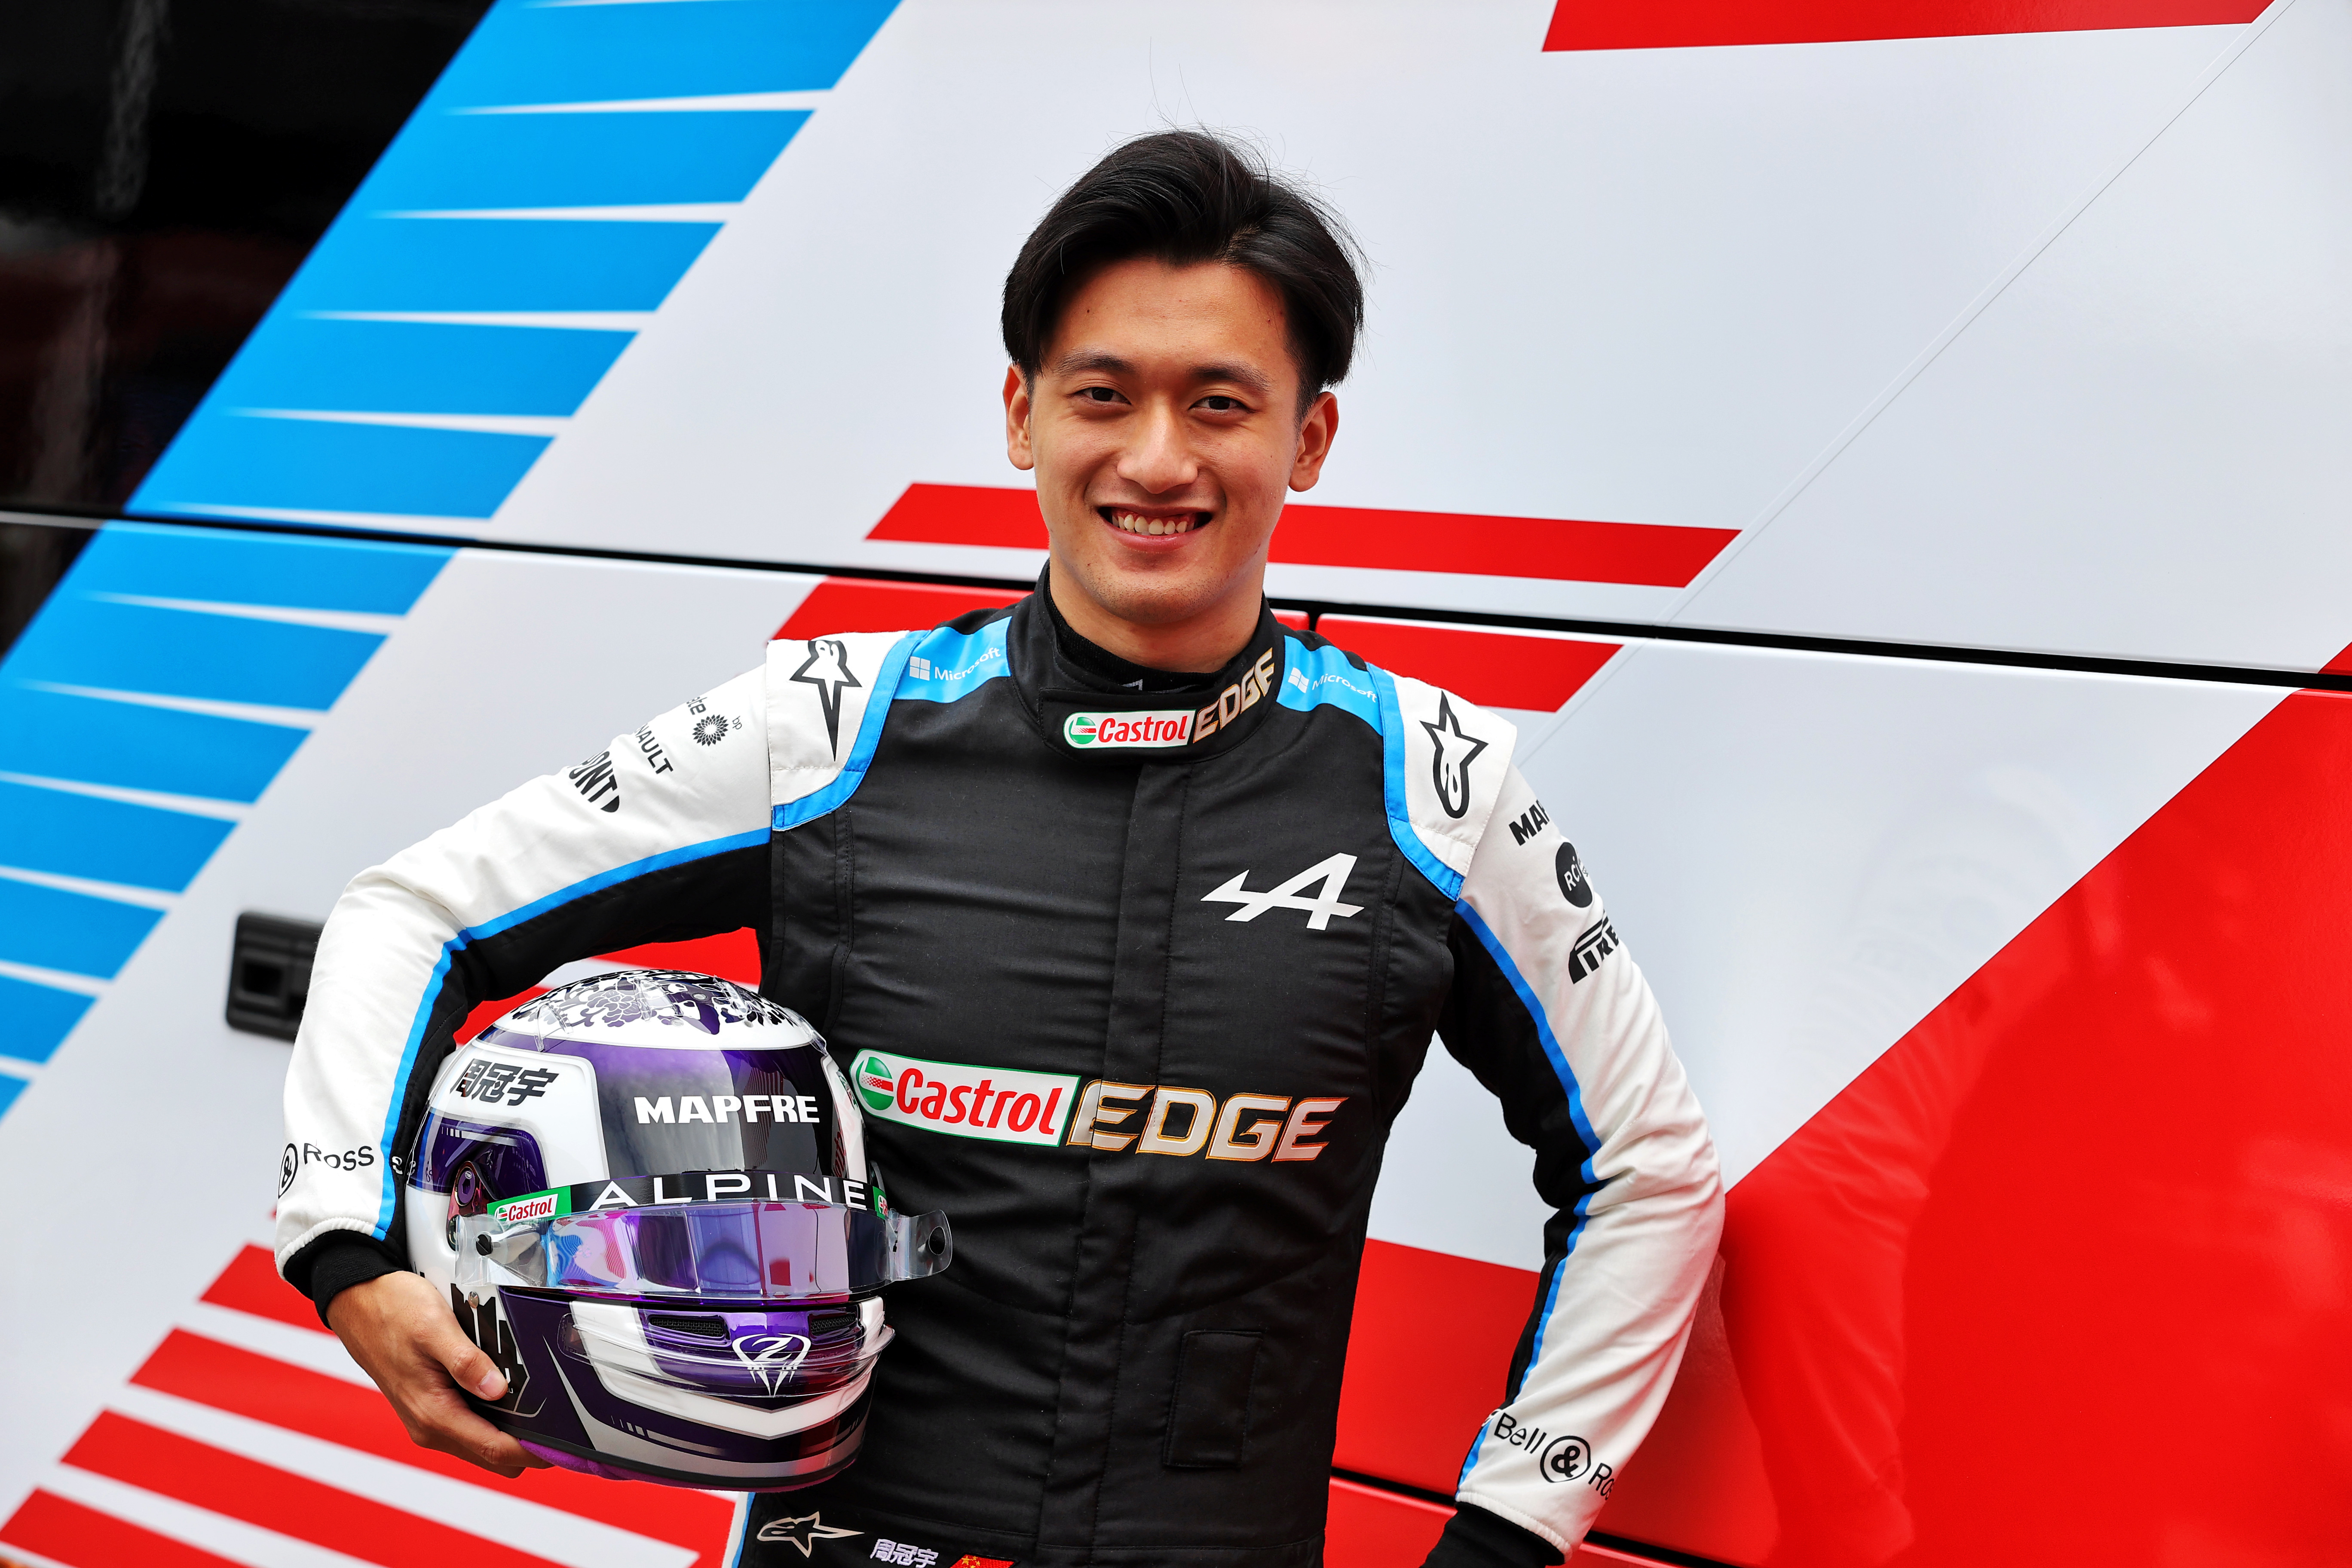 11月16日,f1阿尔法罗密欧车队宣布,来自中国上海的车手周冠宇和车队